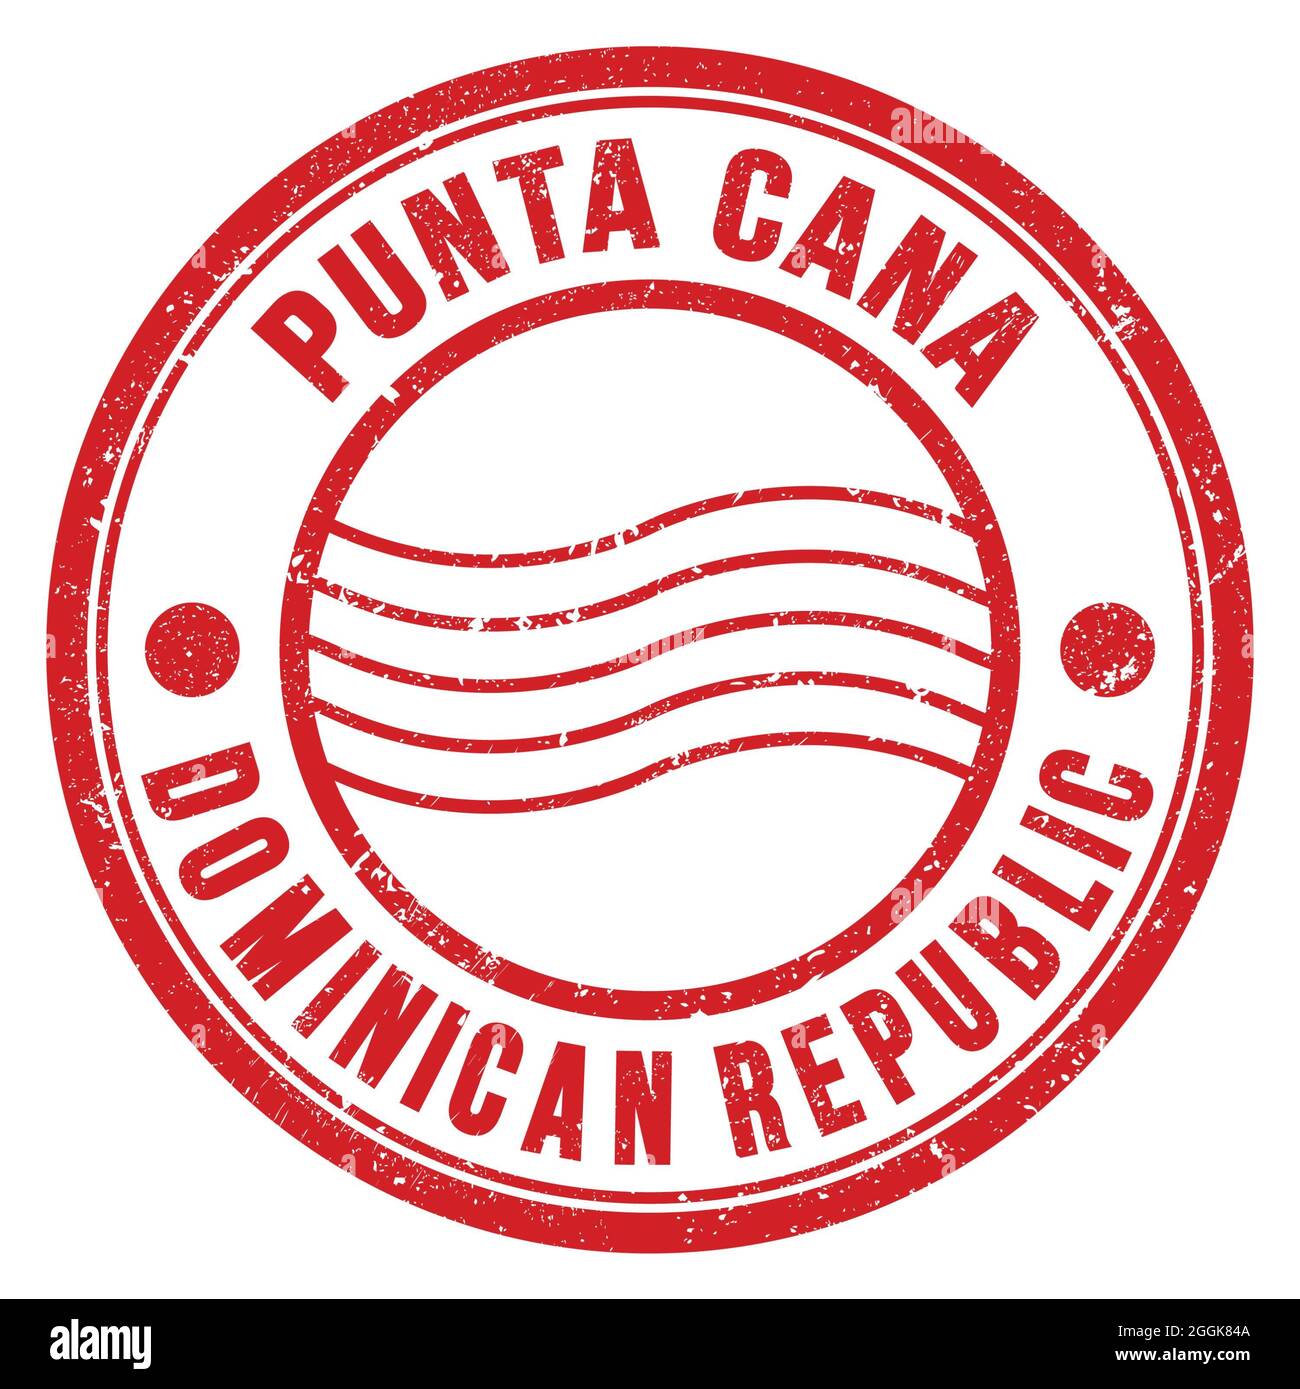 PUNTA CANA - RÉPUBLIQUE DOMINICAINE, mots écrits sur le timbre postal rond rouge Banque D'Images